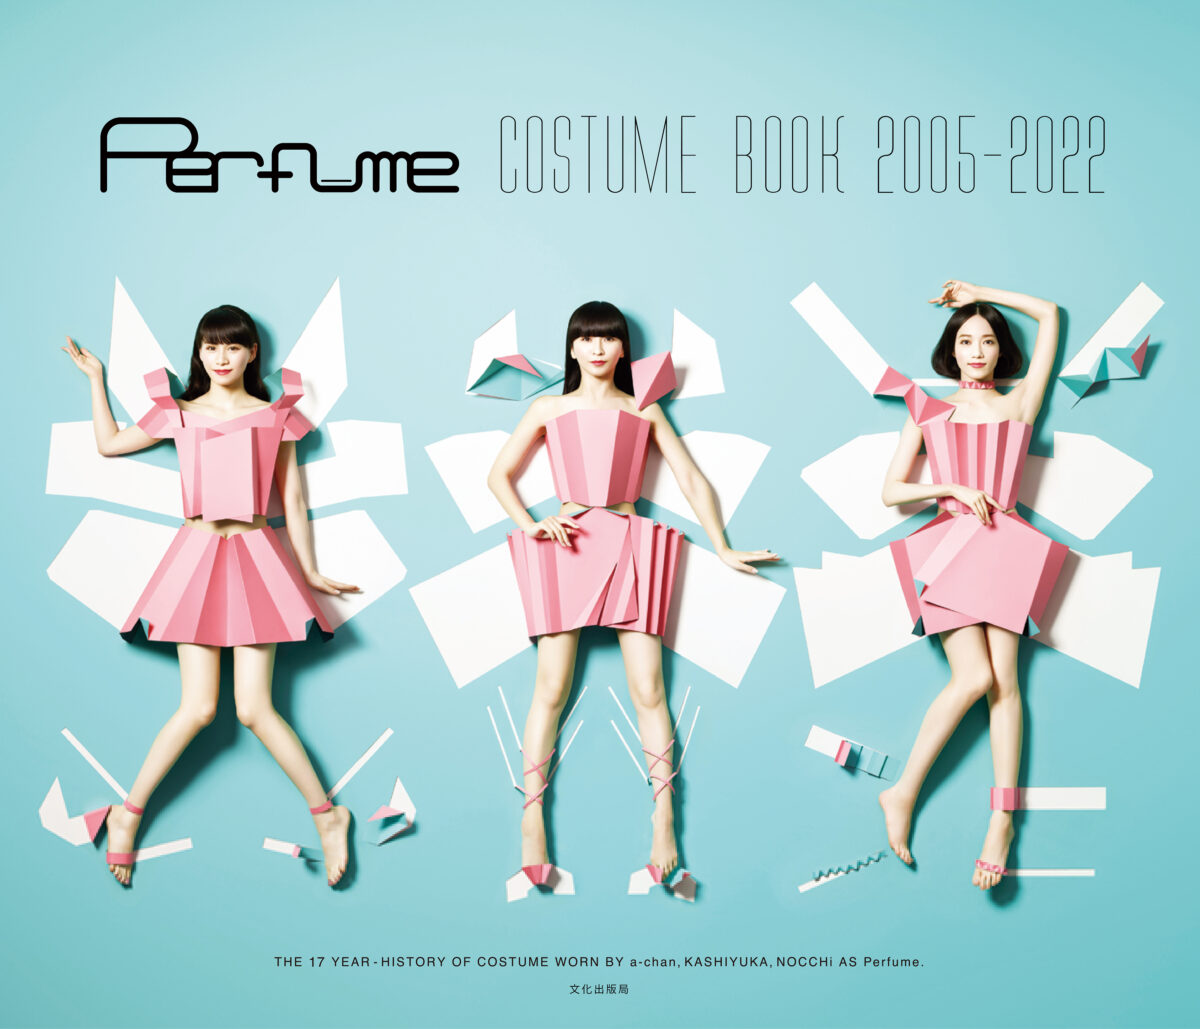 電子書籍『Perfume COSTUME BOOK 2005-2022 e-book edition』発売決定！さらにPerfume...